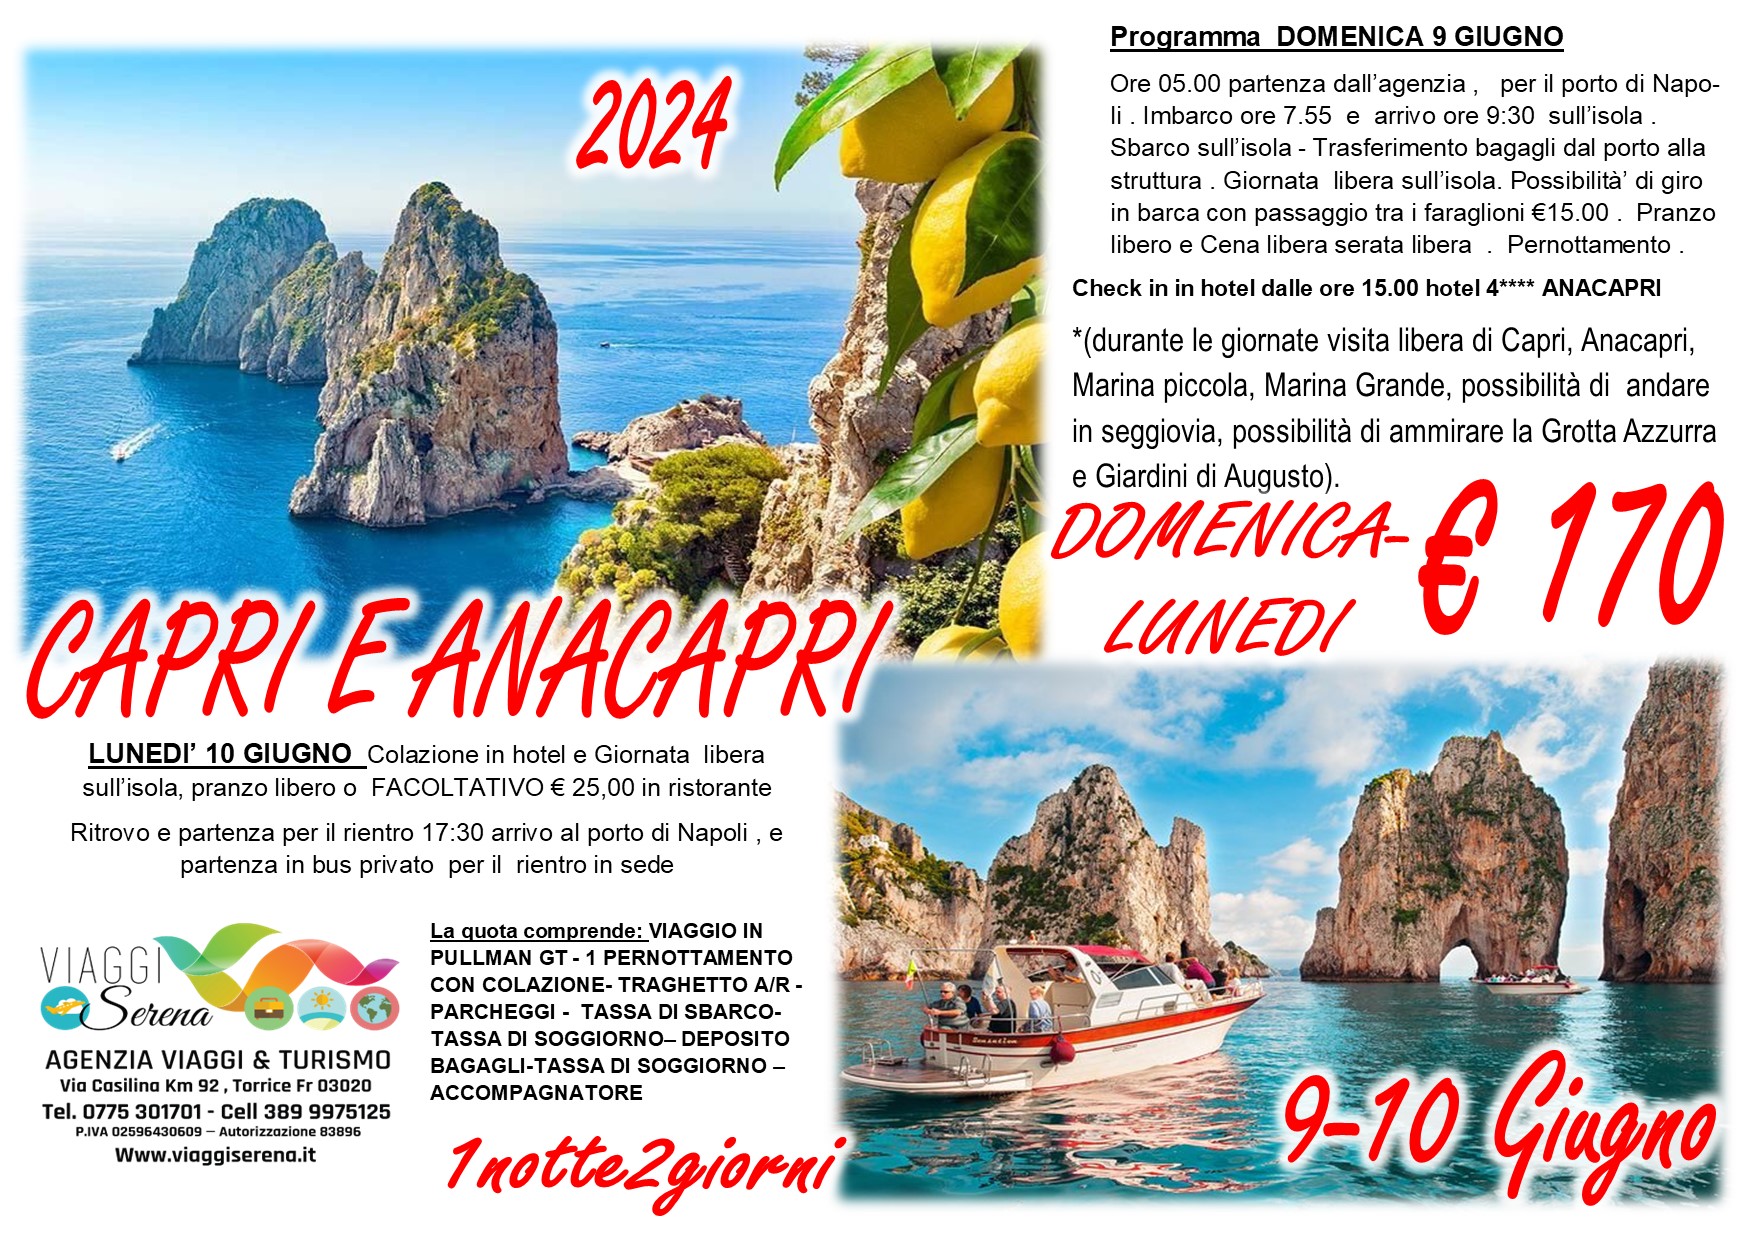 Viaggi di gruppo: Capri e Anacapri 9-10 Giugno €170 “Domenica & Lunedi'”